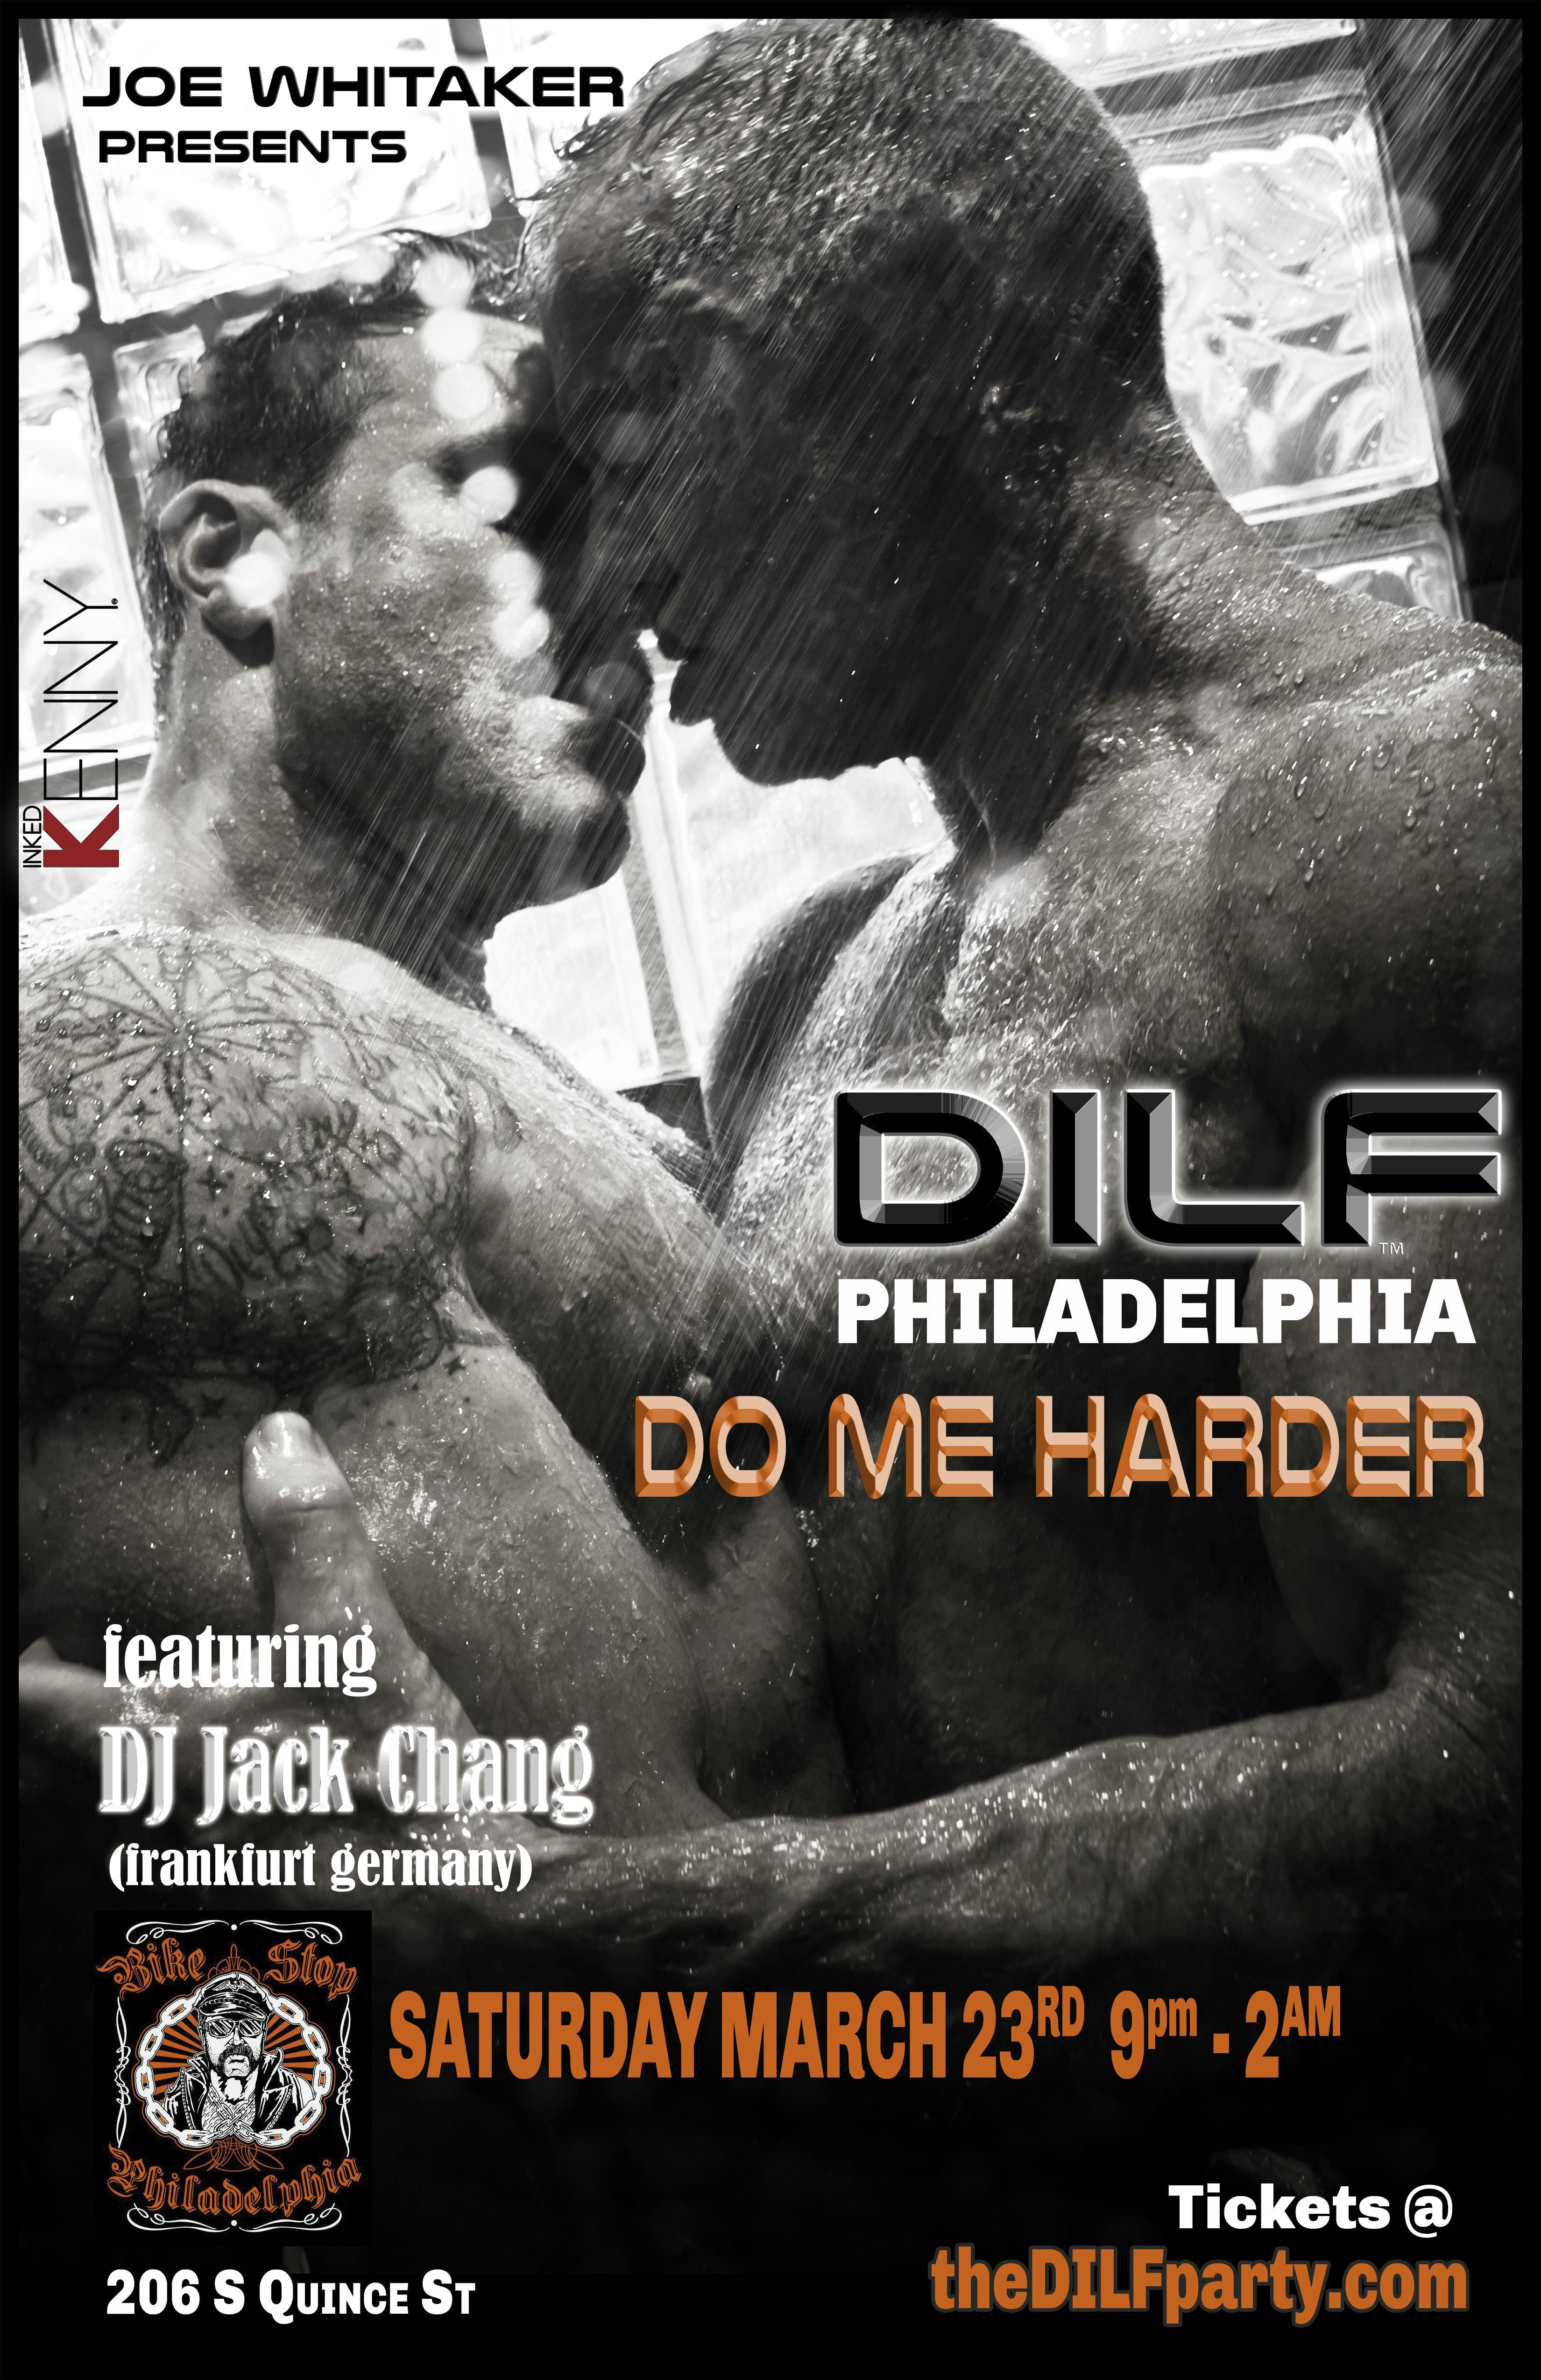 DILF Philadelphia Do Me Harder Jock/Underwear Party by Joe Whitaker Presents